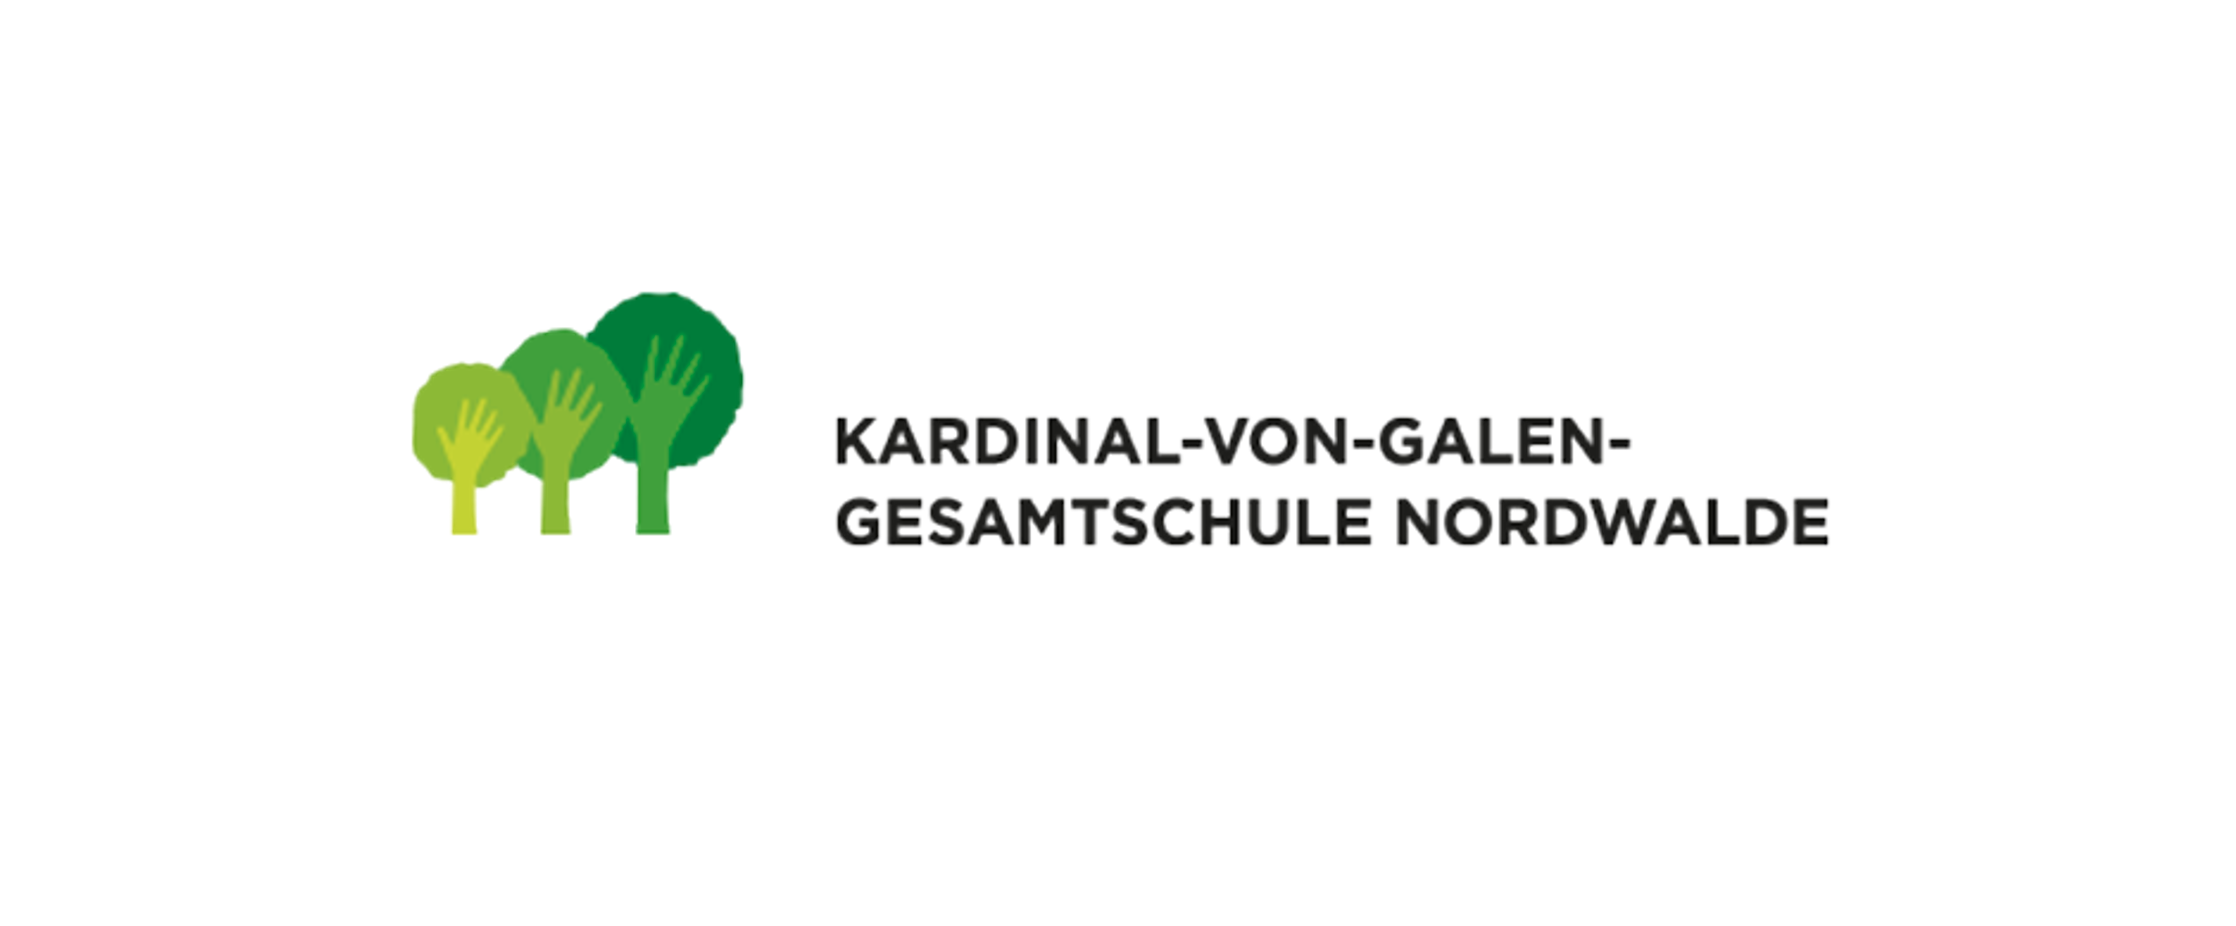 Kardinal von Galen Gesamtschule Nordwalde Logo